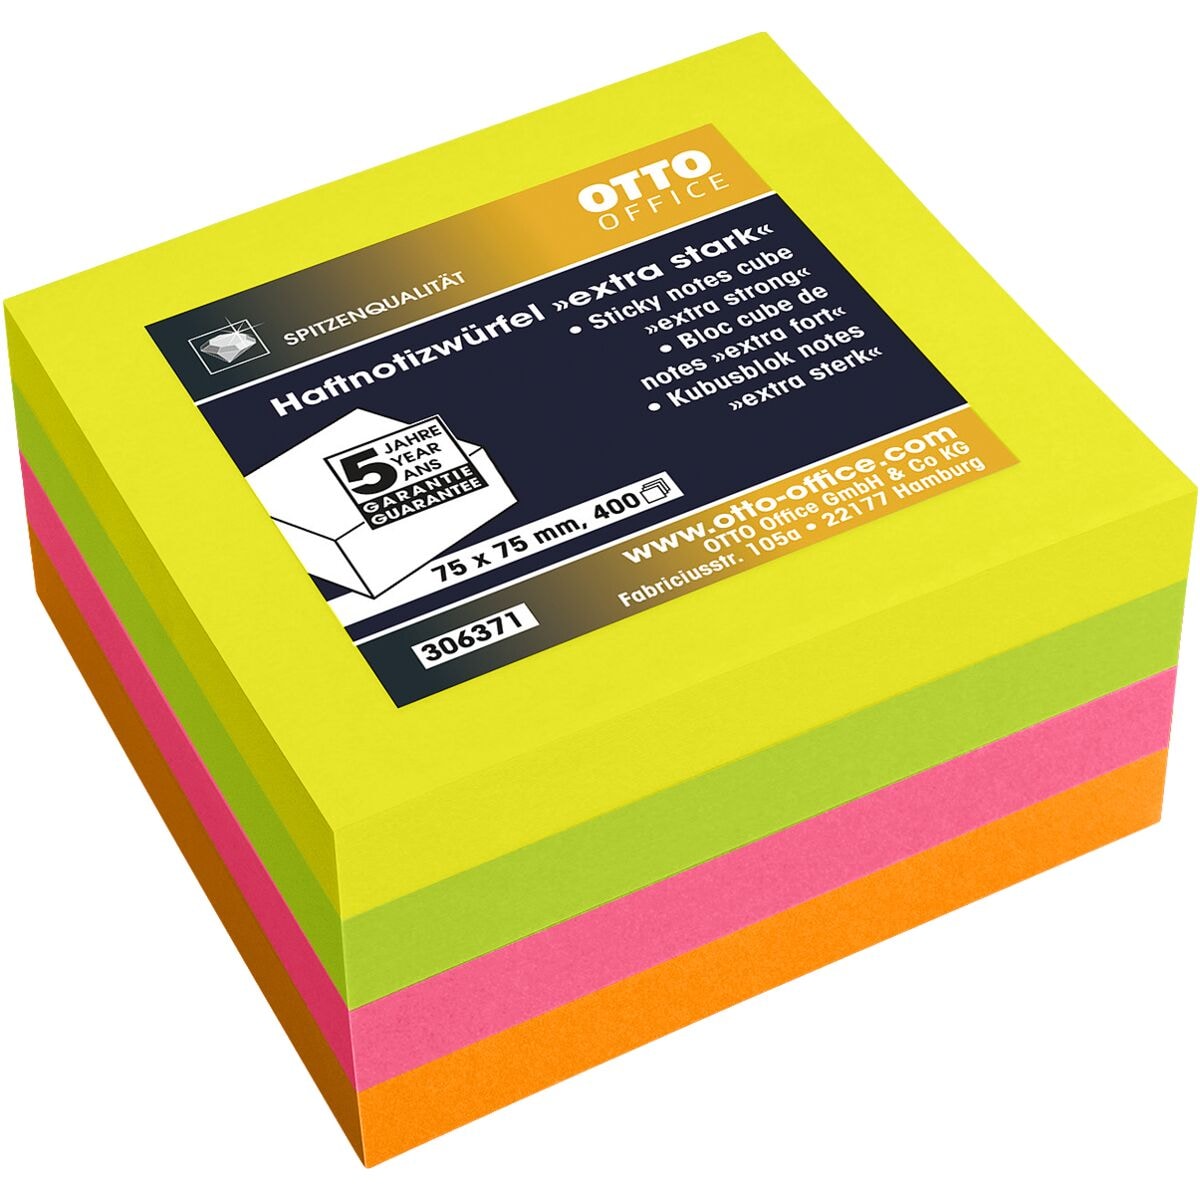 OTTO Office Premium bloc de notes repositionnables ultra fort 7,5/7,5 cm, 400 feuilles au total, couleurs assorties